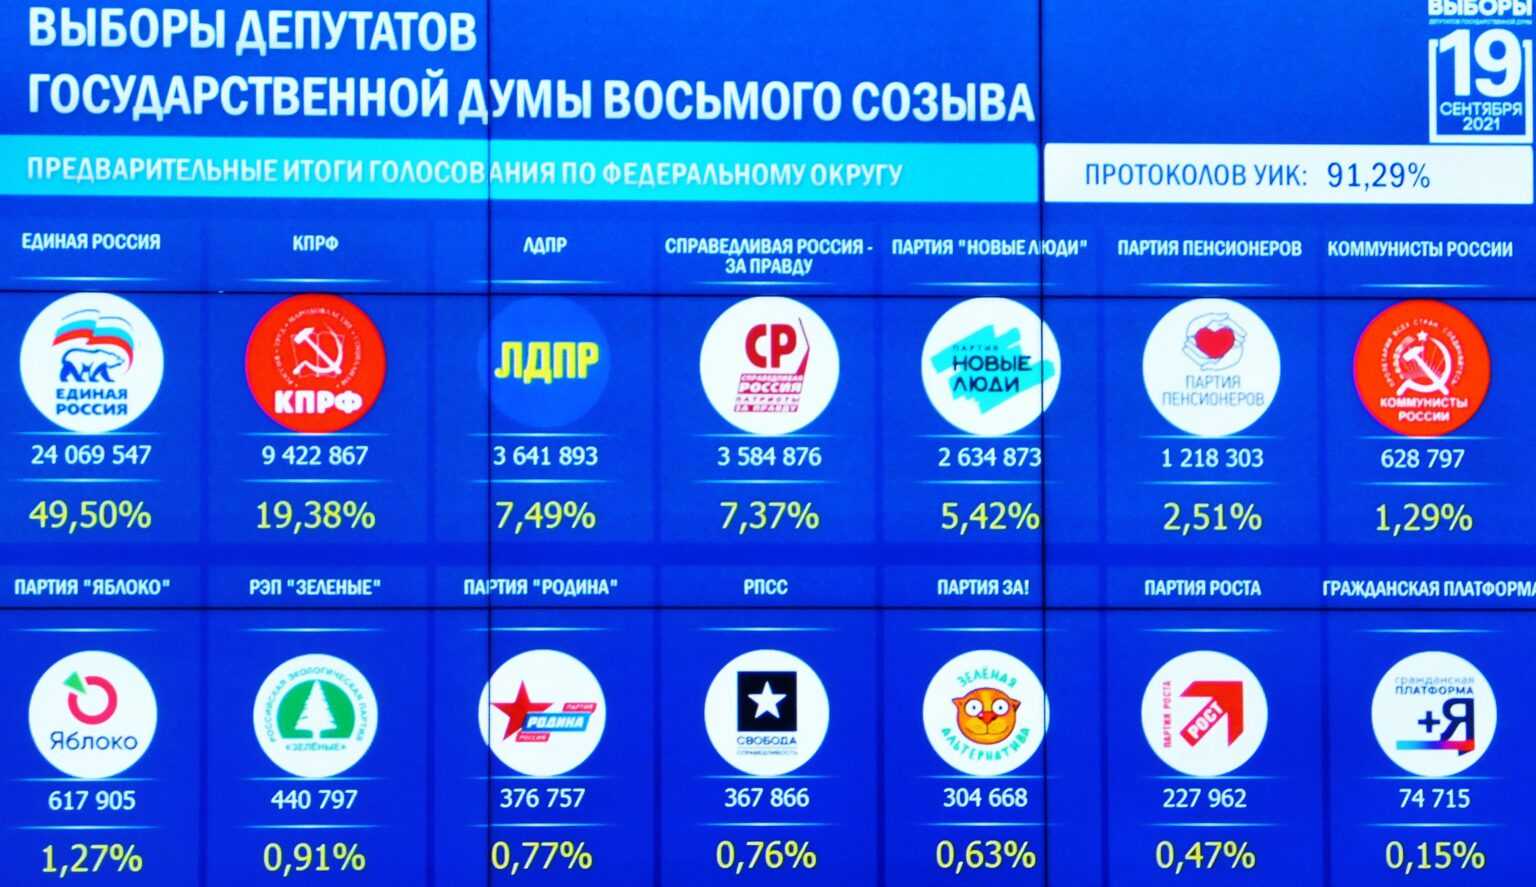 Соцопросы: рейтинги политических партий украины, выборы в украине, ukraine elections